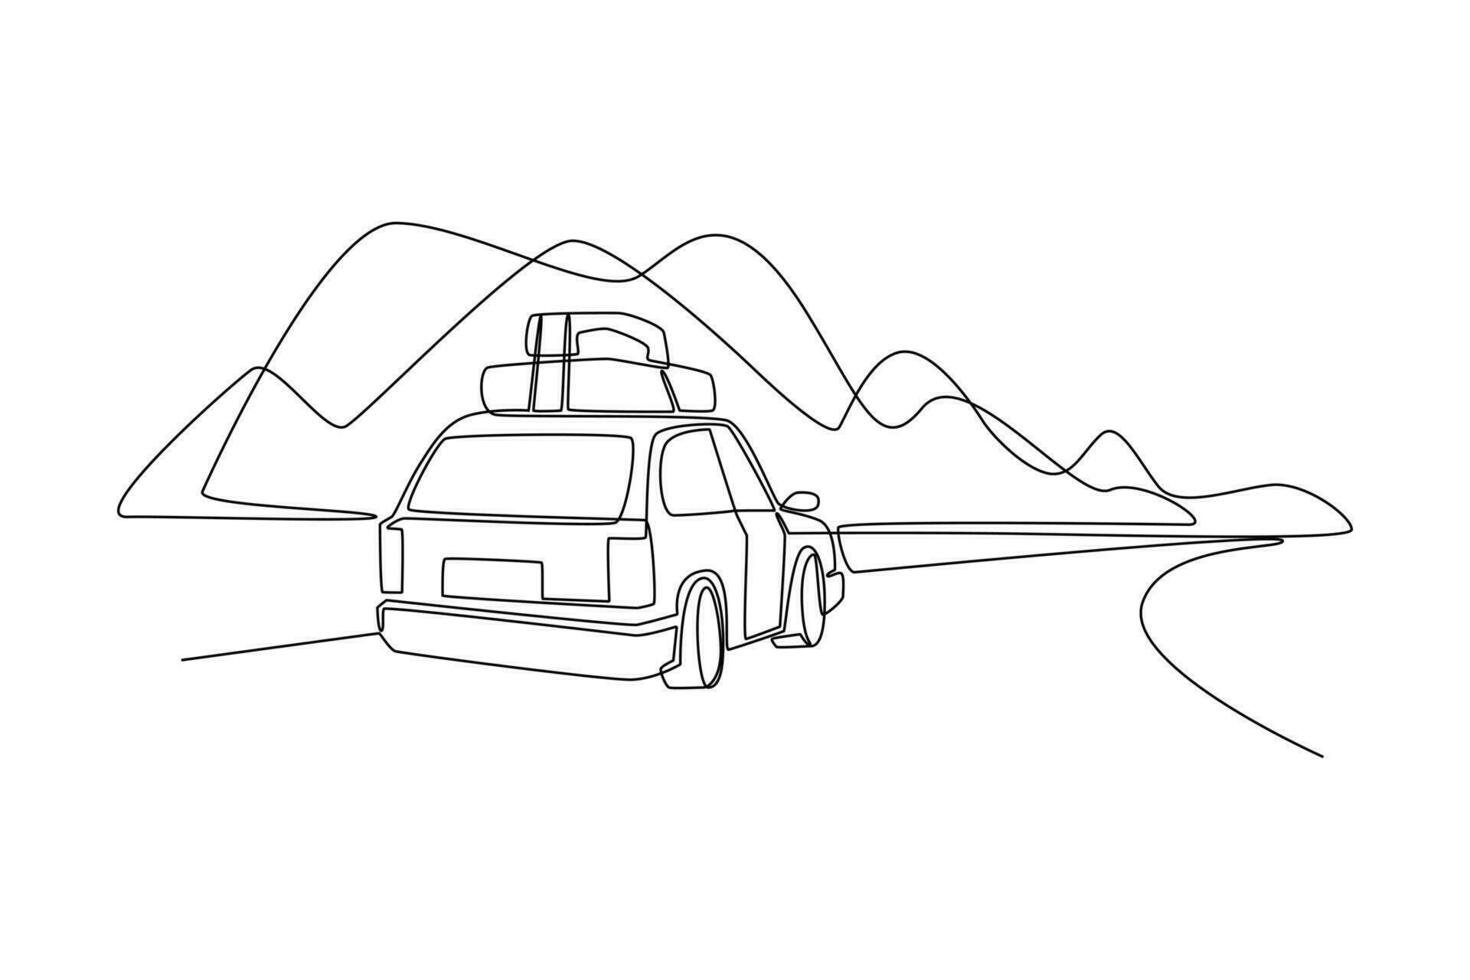 continuo uno linea disegno strada viaggio concetto. singolo linea disegnare design vettore grafico illustrazione.